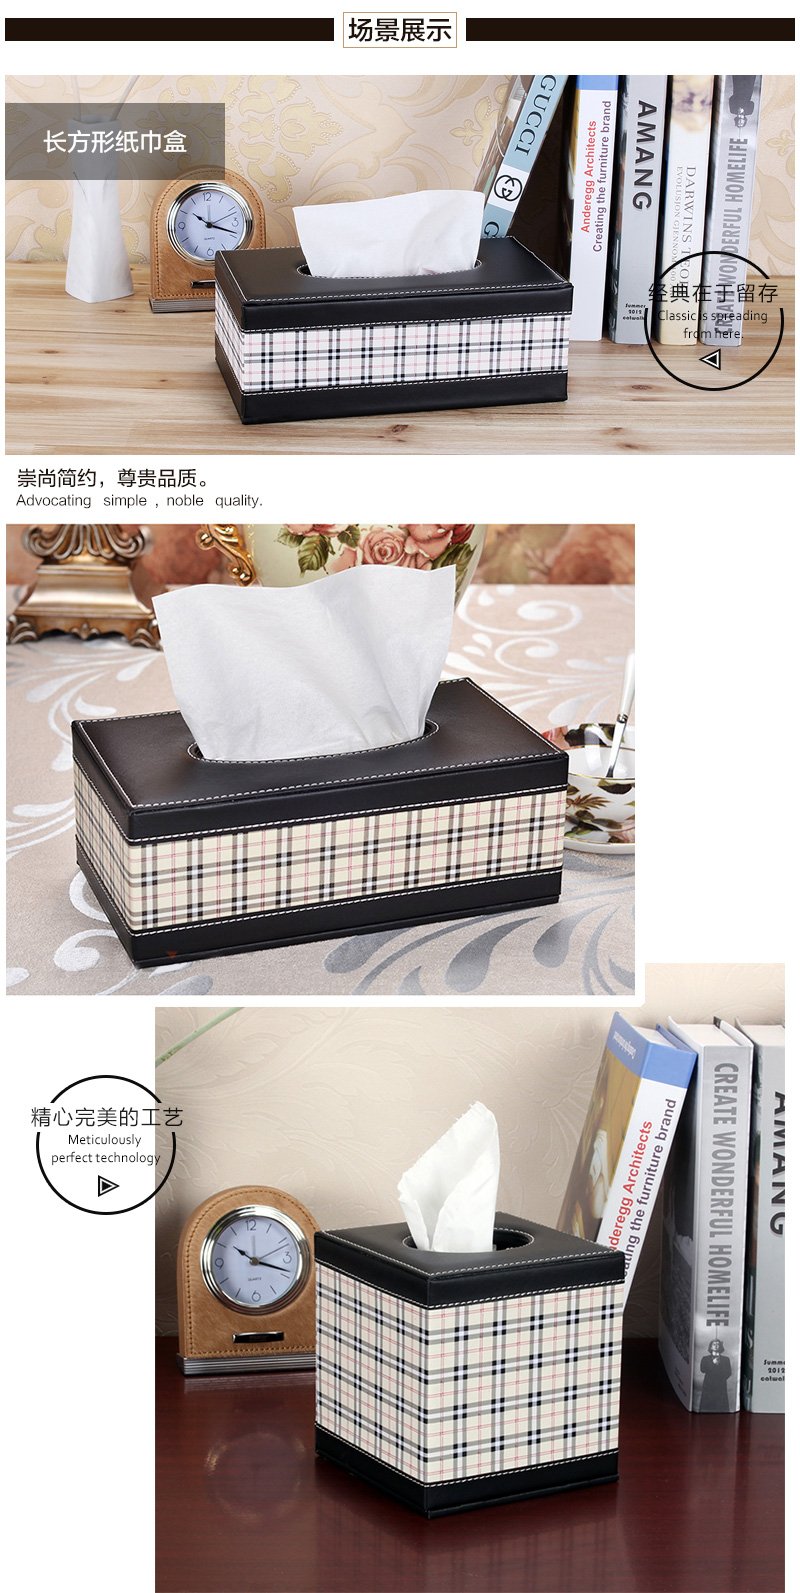 Modern simple creative white grid square paper towel box fashion carton PY-ZJH501, PY-ZJH002, PY-ZFX001,3